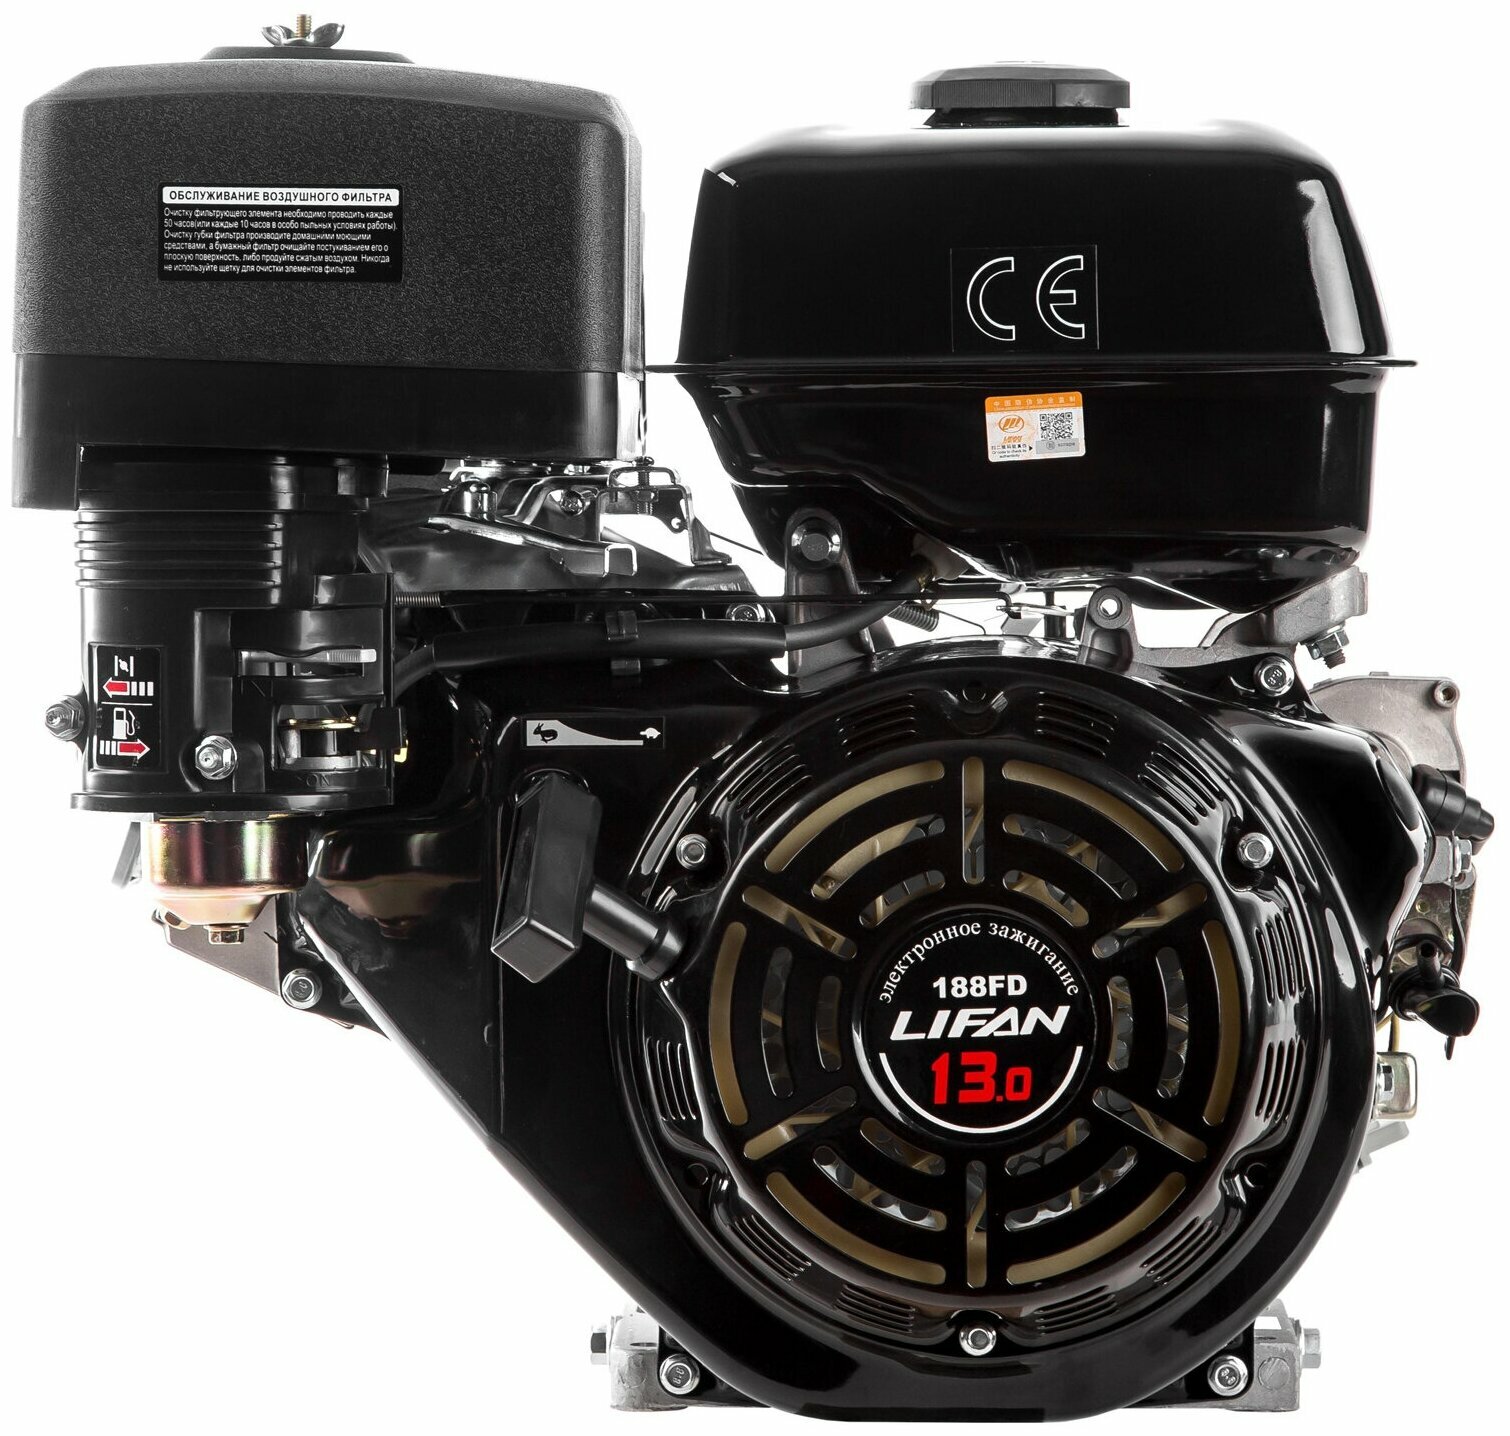 Бензиновый двигатель LIFAN 188FD 13 л.с.